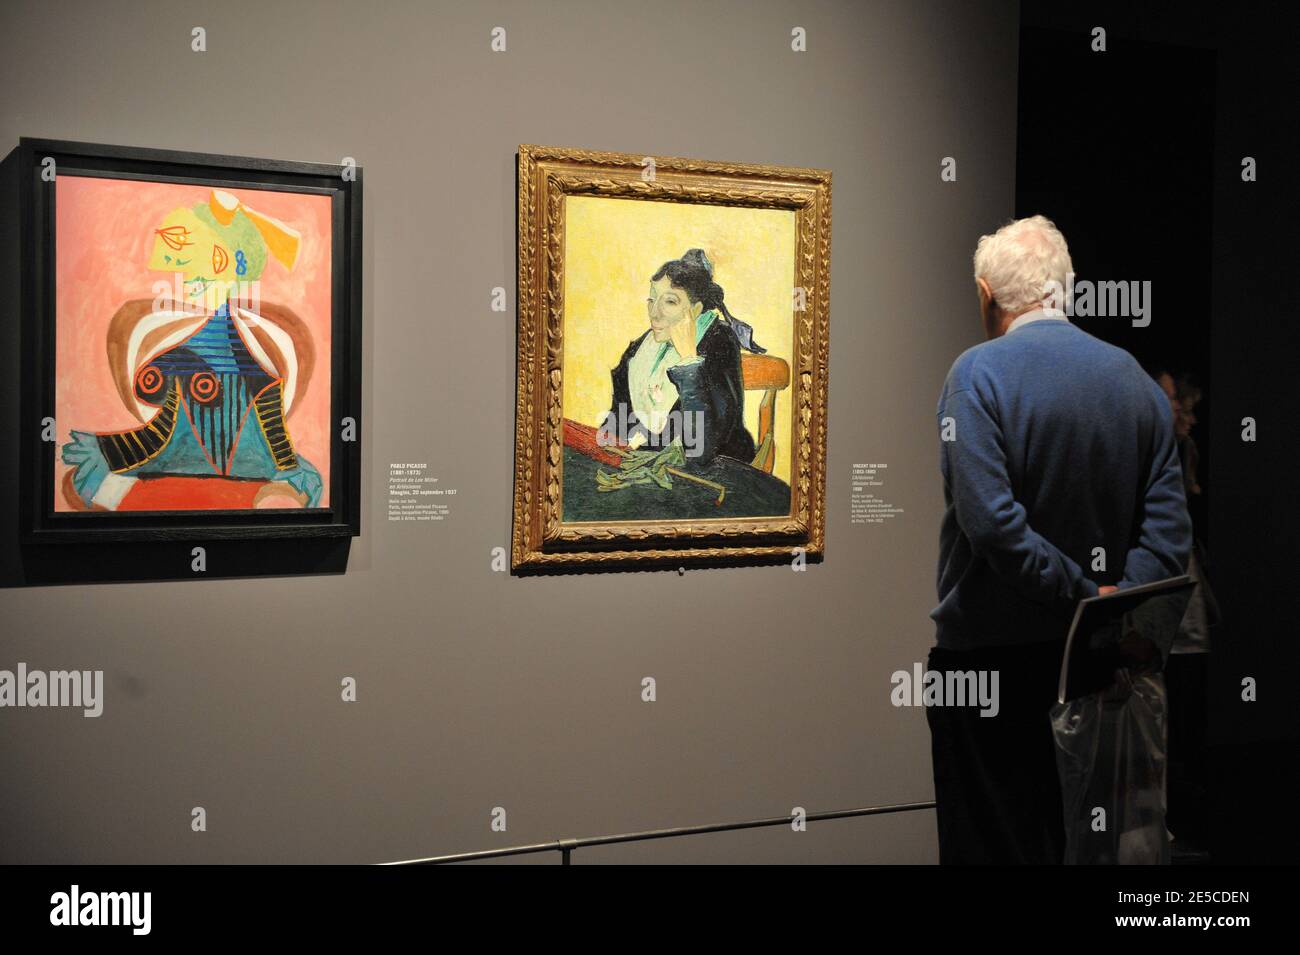 Ouverture de l'exposition 'Picasso et Maîtres' (Picasso et les Maitres) au Grand Palais de Paris, France, le 6 octobre 2008. L'exposition, qui commence du 8 octobre 2008 au 2 février 2009, juxtapose le passé et le présent, illustre les changements majeurs de direction et les innovations formelles qui ont marqué la carrière de Picasso, tout en proposant un dialogue entre l'artiste et ses prédécesseurs. Photo d'un tableau du Vicent Van Gogh 'l'arlesienne' (1888) (R) et d'un portrait de 'Lee Miller in Arlesienne.' (1937) (L) par le peintre espagnol Picasso. Photo de Thierry Orban/ABACAPRESS.COM Banque D'Images